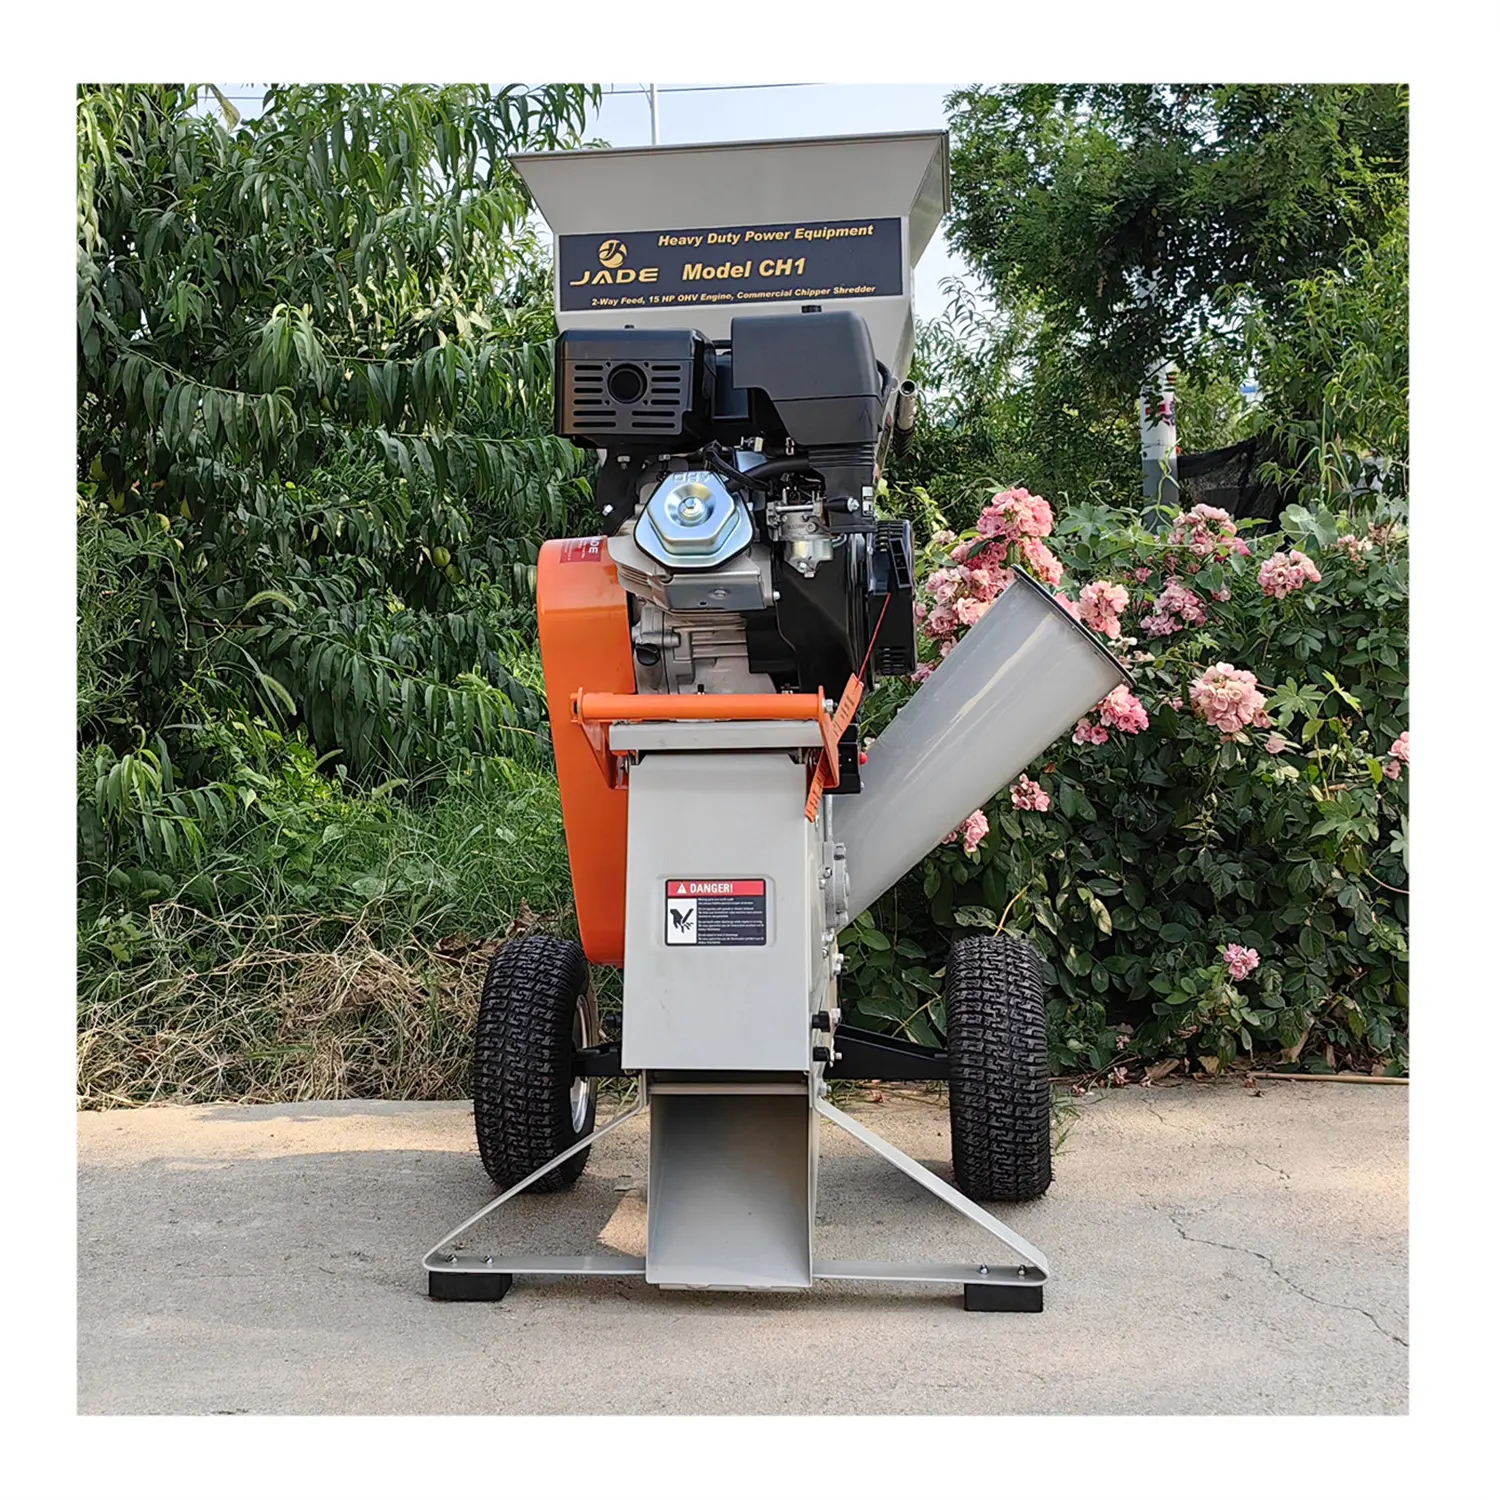 Çin bağlantı küçük ticari davul kullanımı gaz motoru ahşap parçalama Chippers palet hareketli bahçe aracı CH3 parçalayıcı makine parçalayıcı